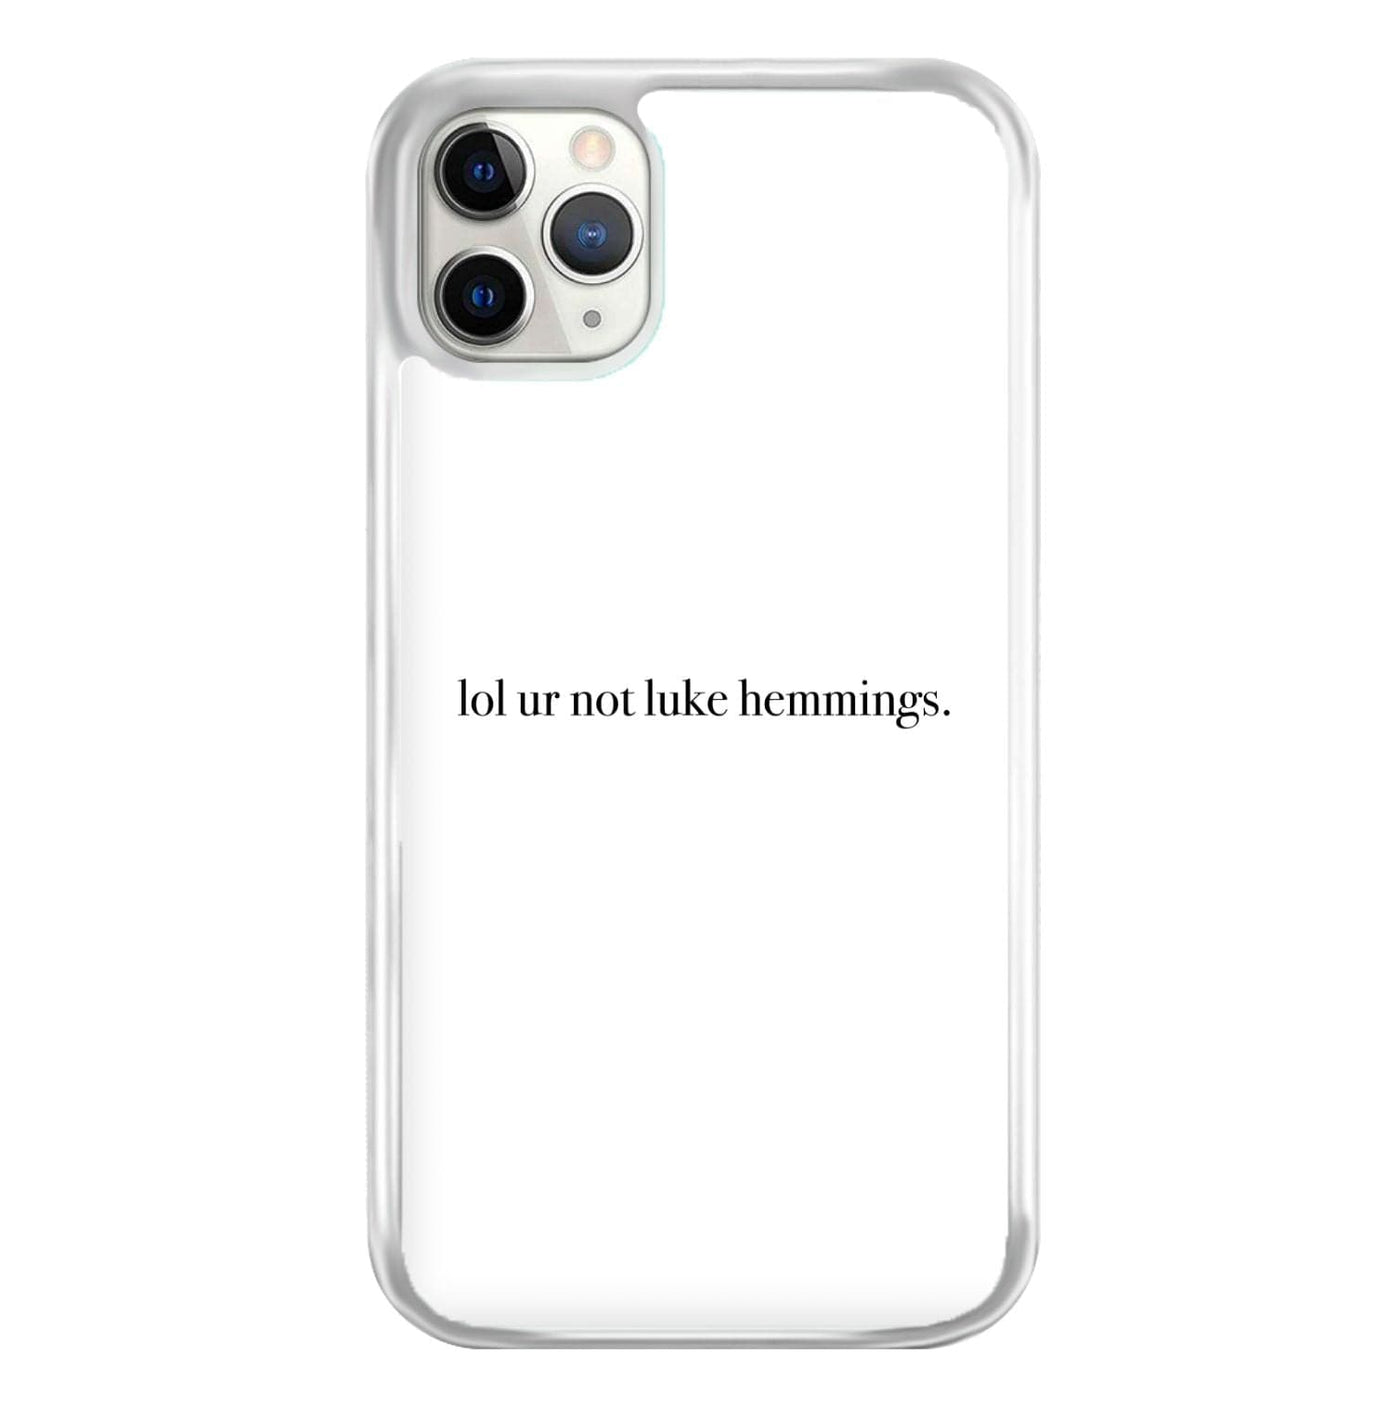 Lol Ur Not Luke Hemmings - 5 Seconds Of Summer  Phone Case